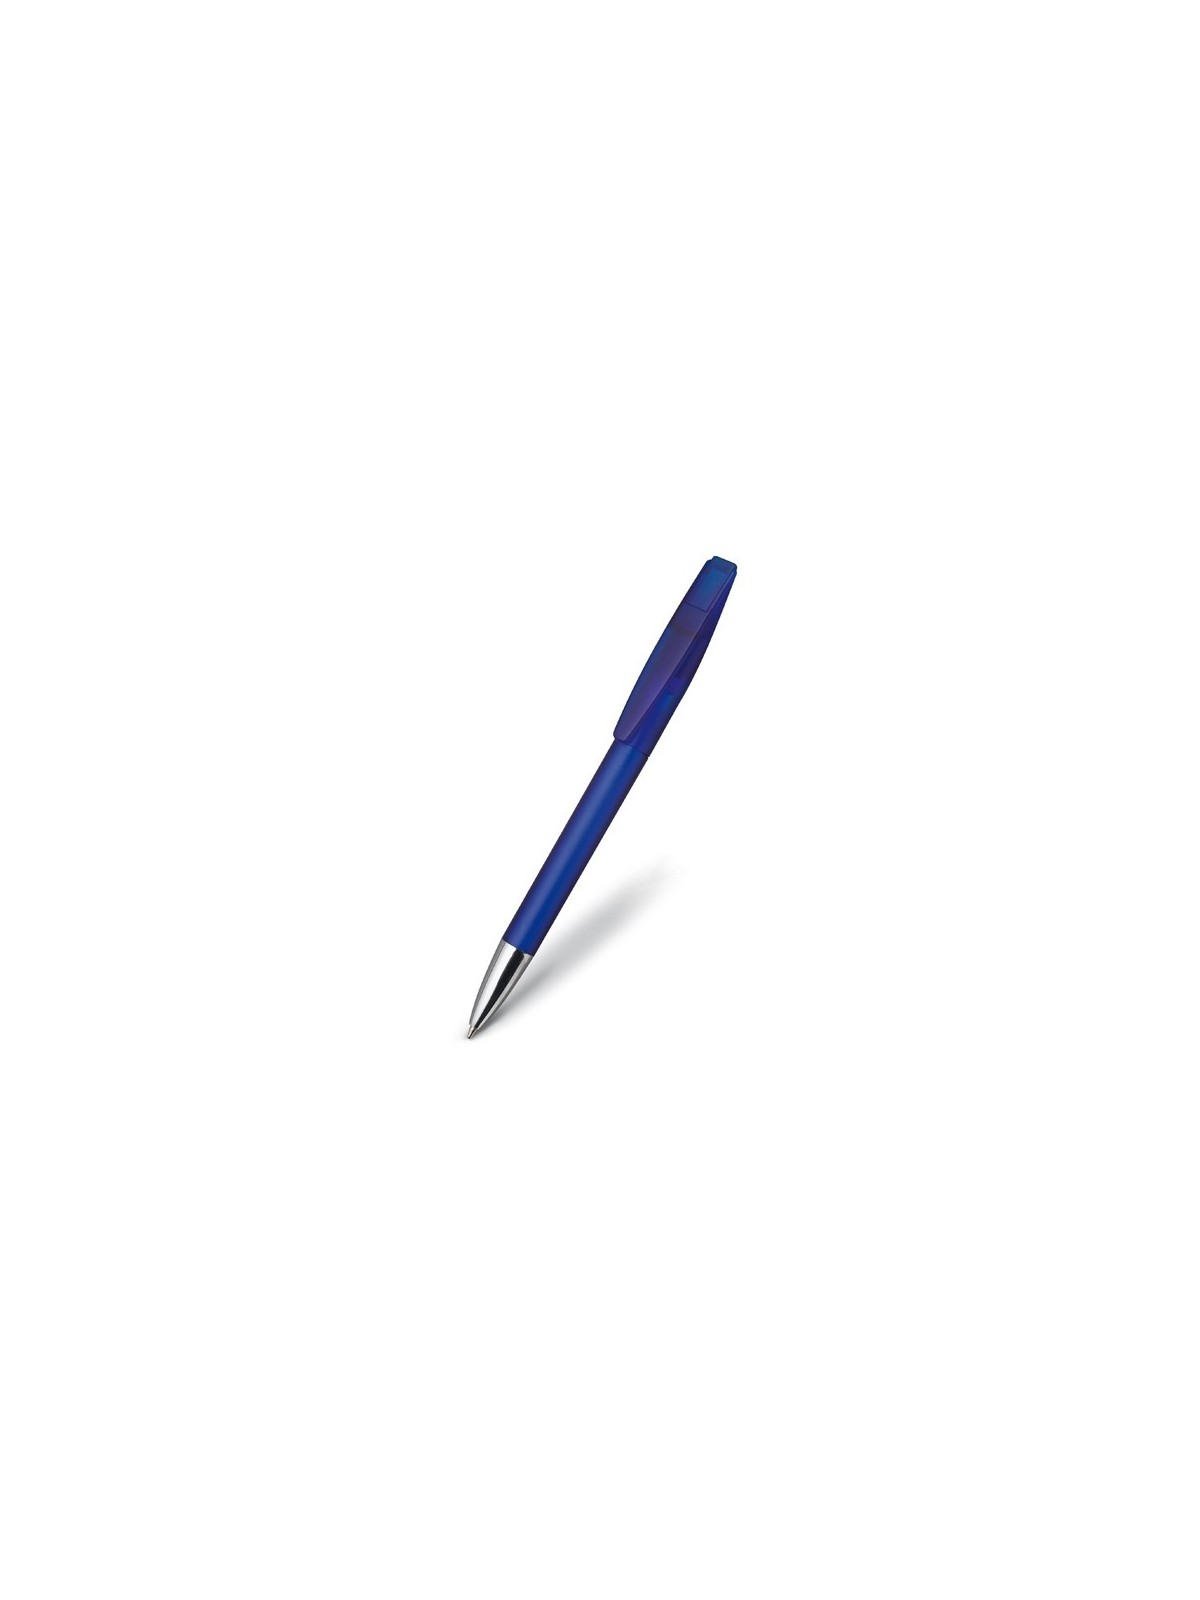 36-594 Stylo à bille Special Concept pen Four personnalisé